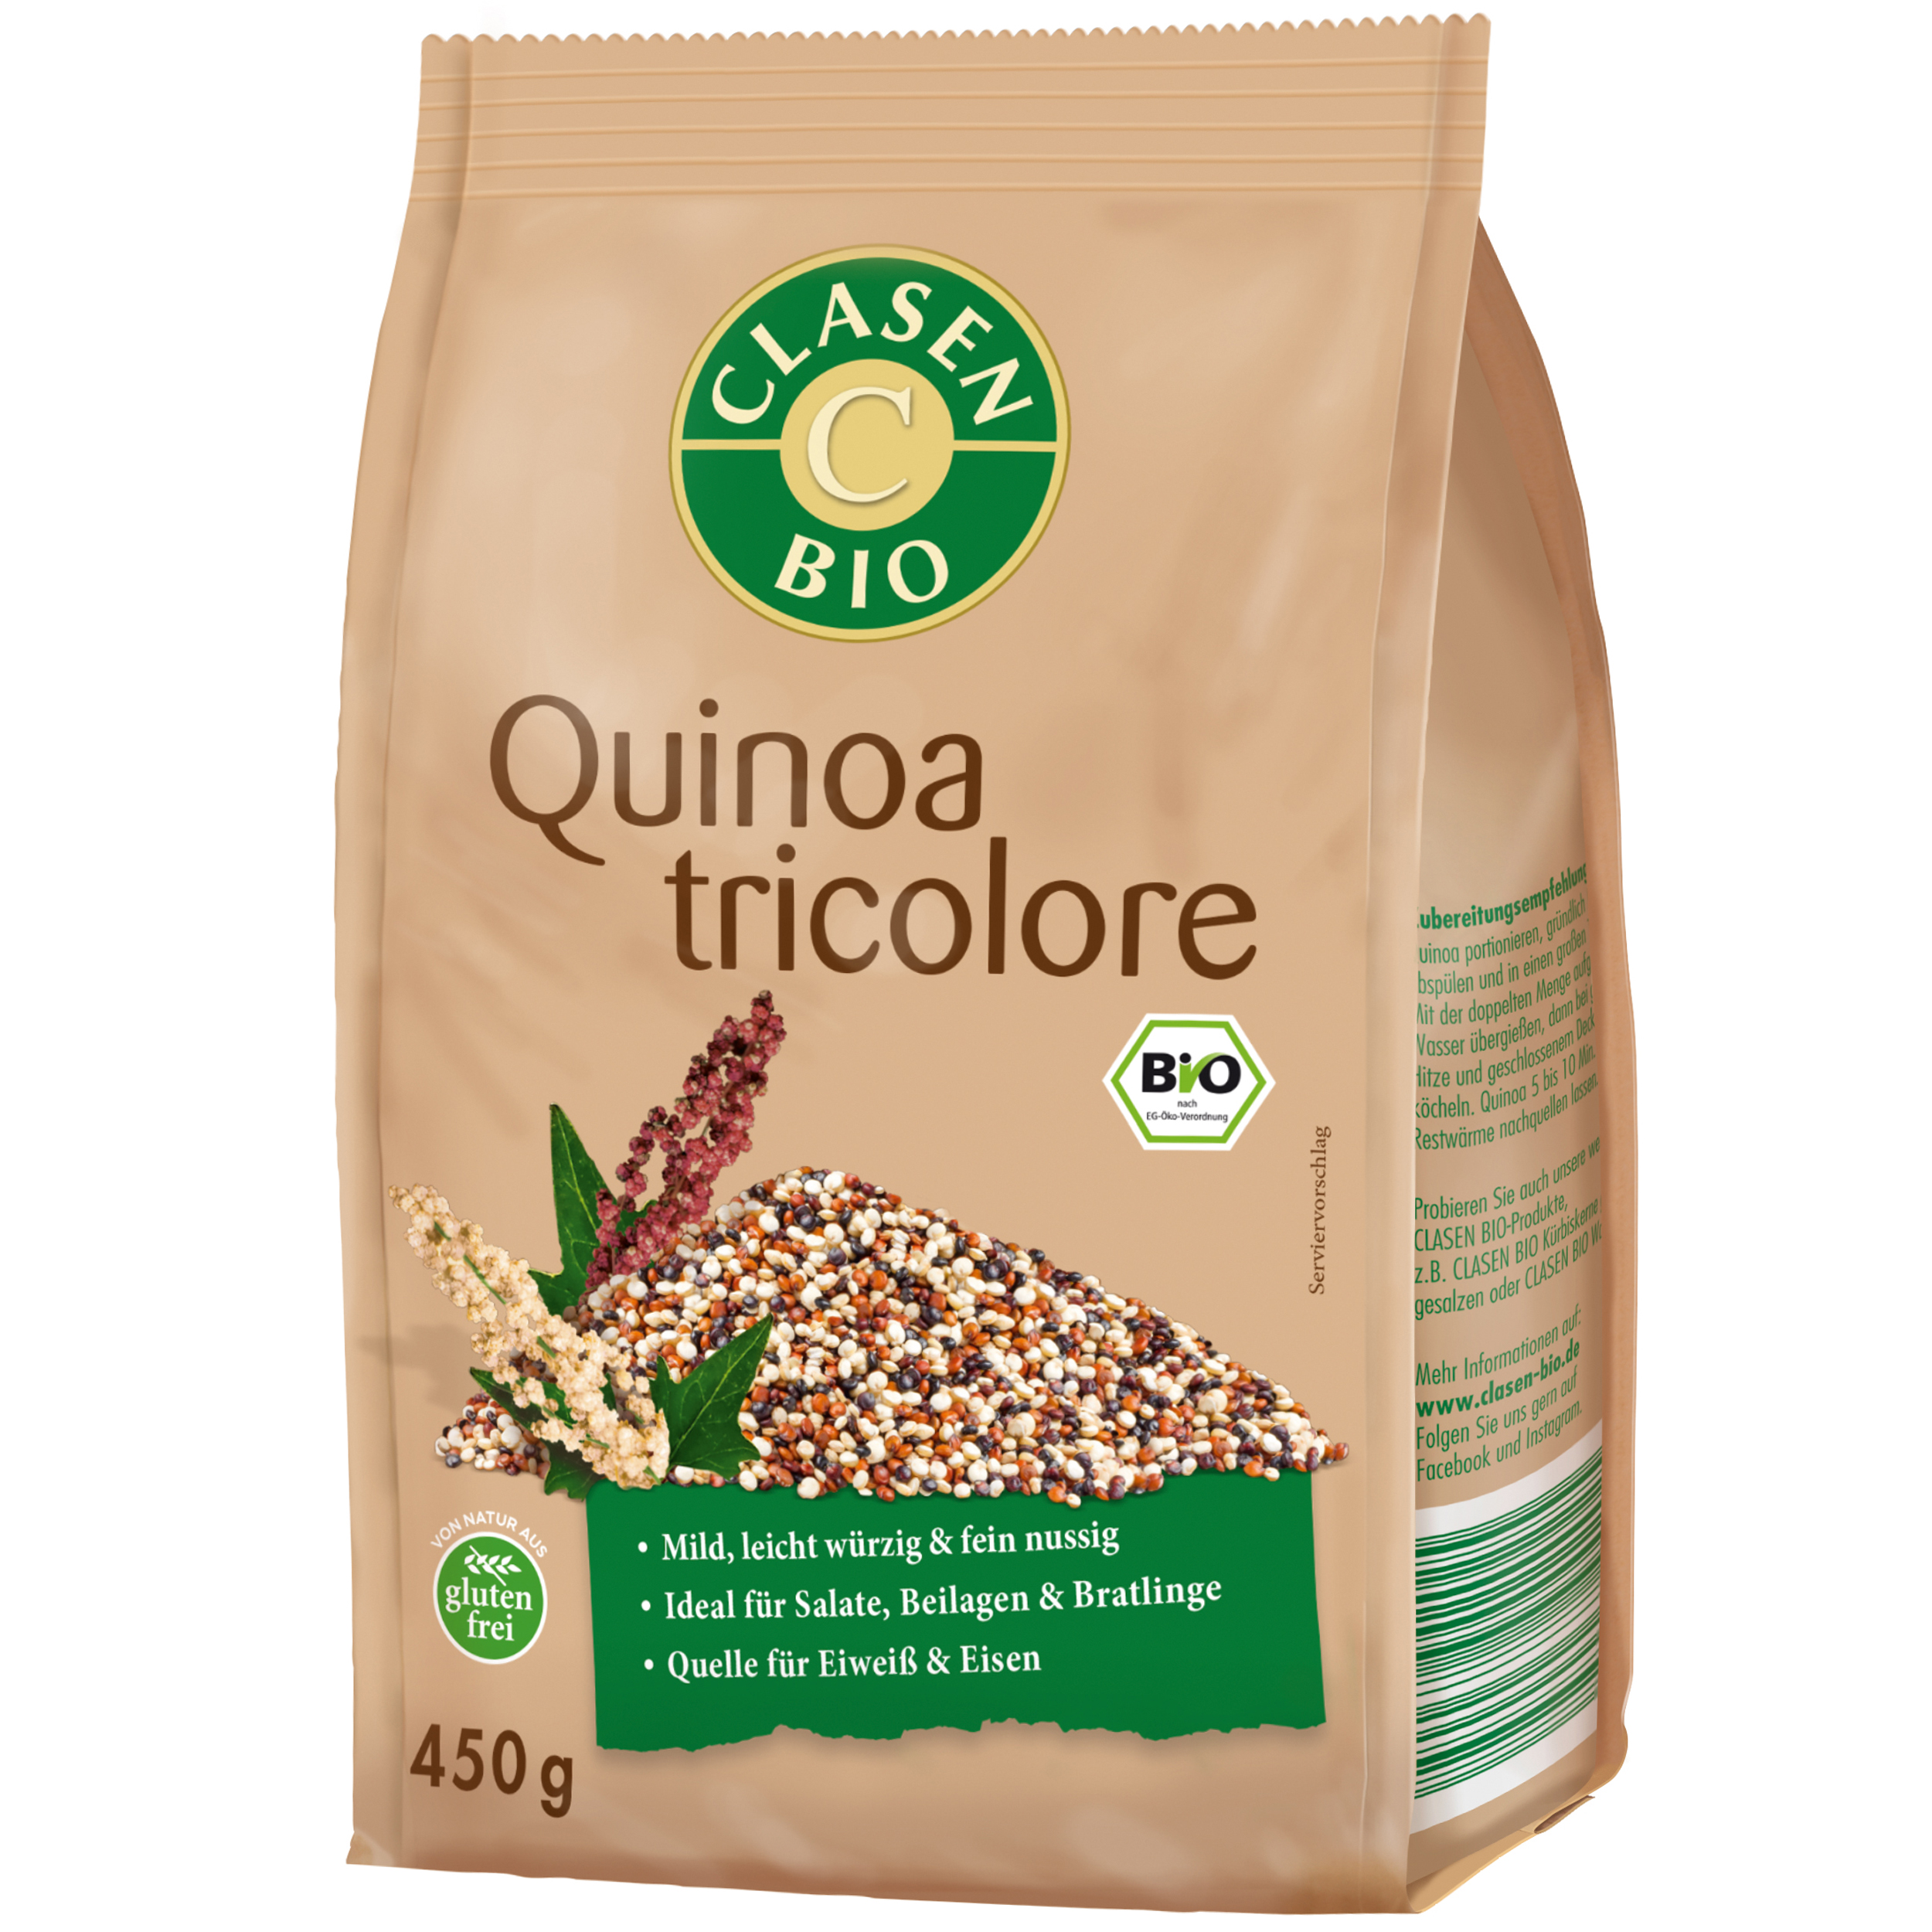 Quinoa tricolore